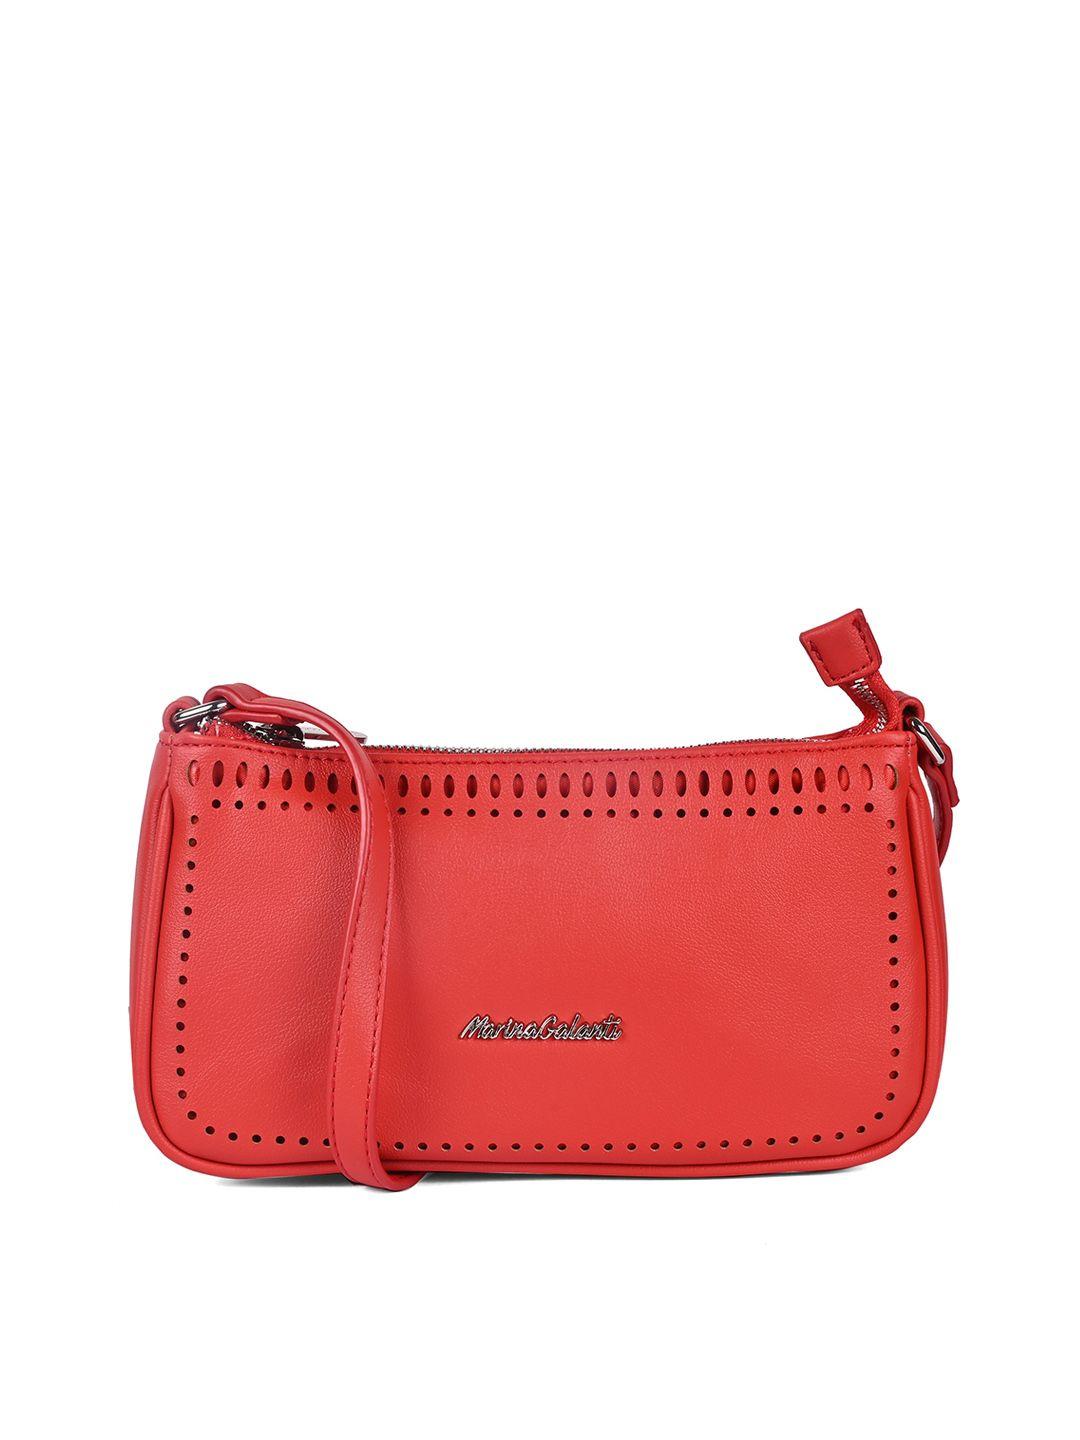 marina galanti women red pu shopper sling bag